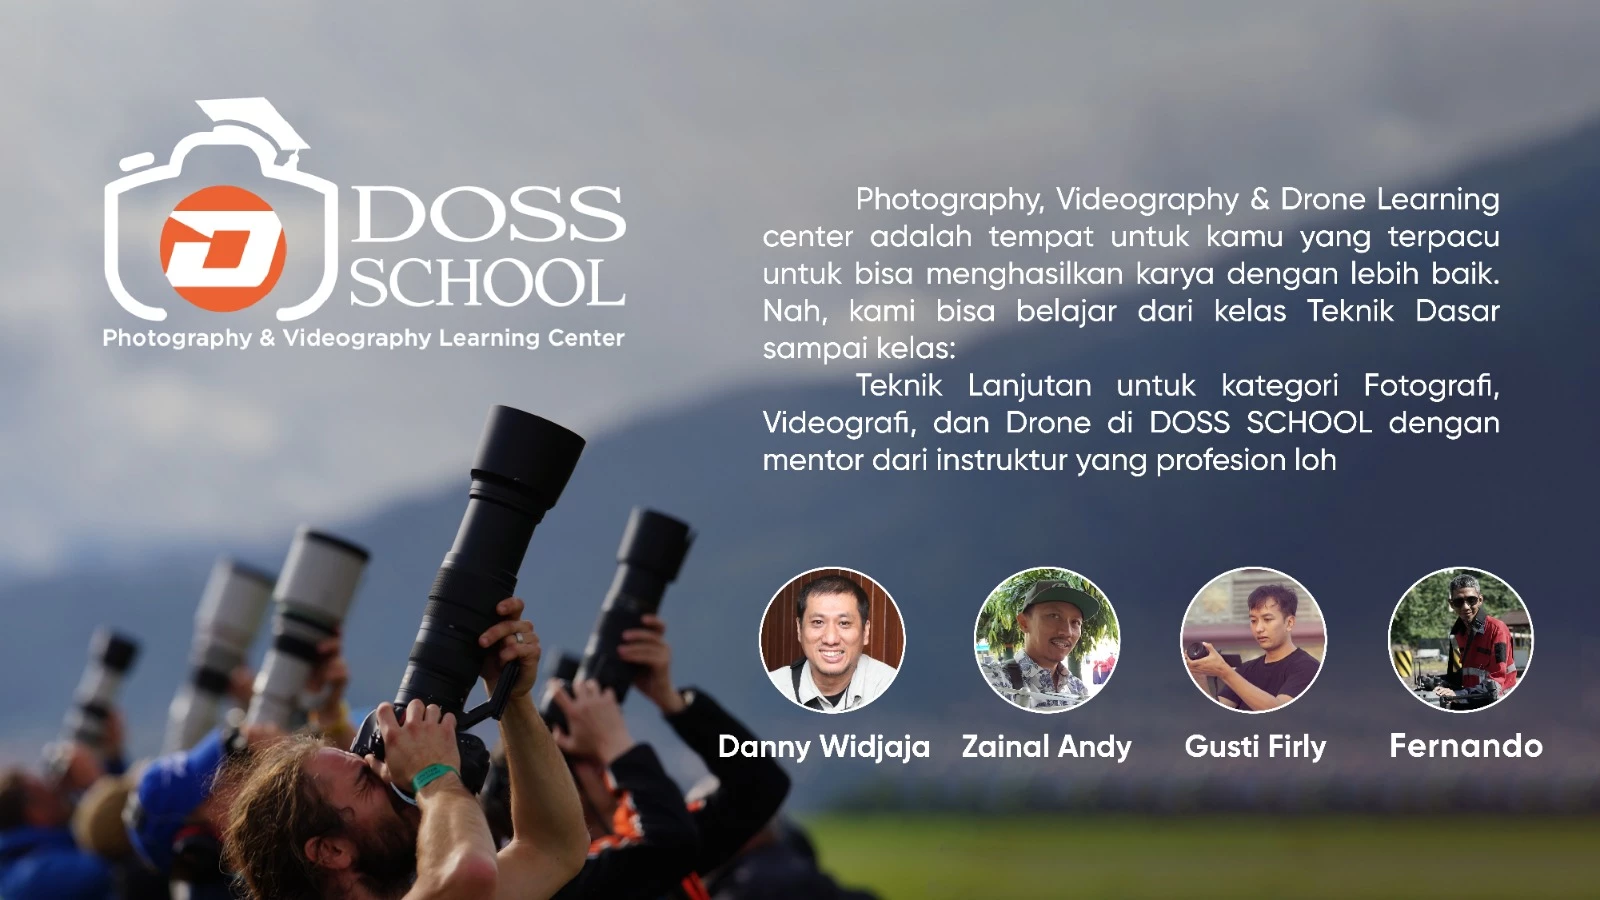 DOSS School terdiri dari kelas Fotografi dan Videografi, kamu bisa belajar dari kelas Teknik Dasar sampai kelas Teknik Lanjutan.